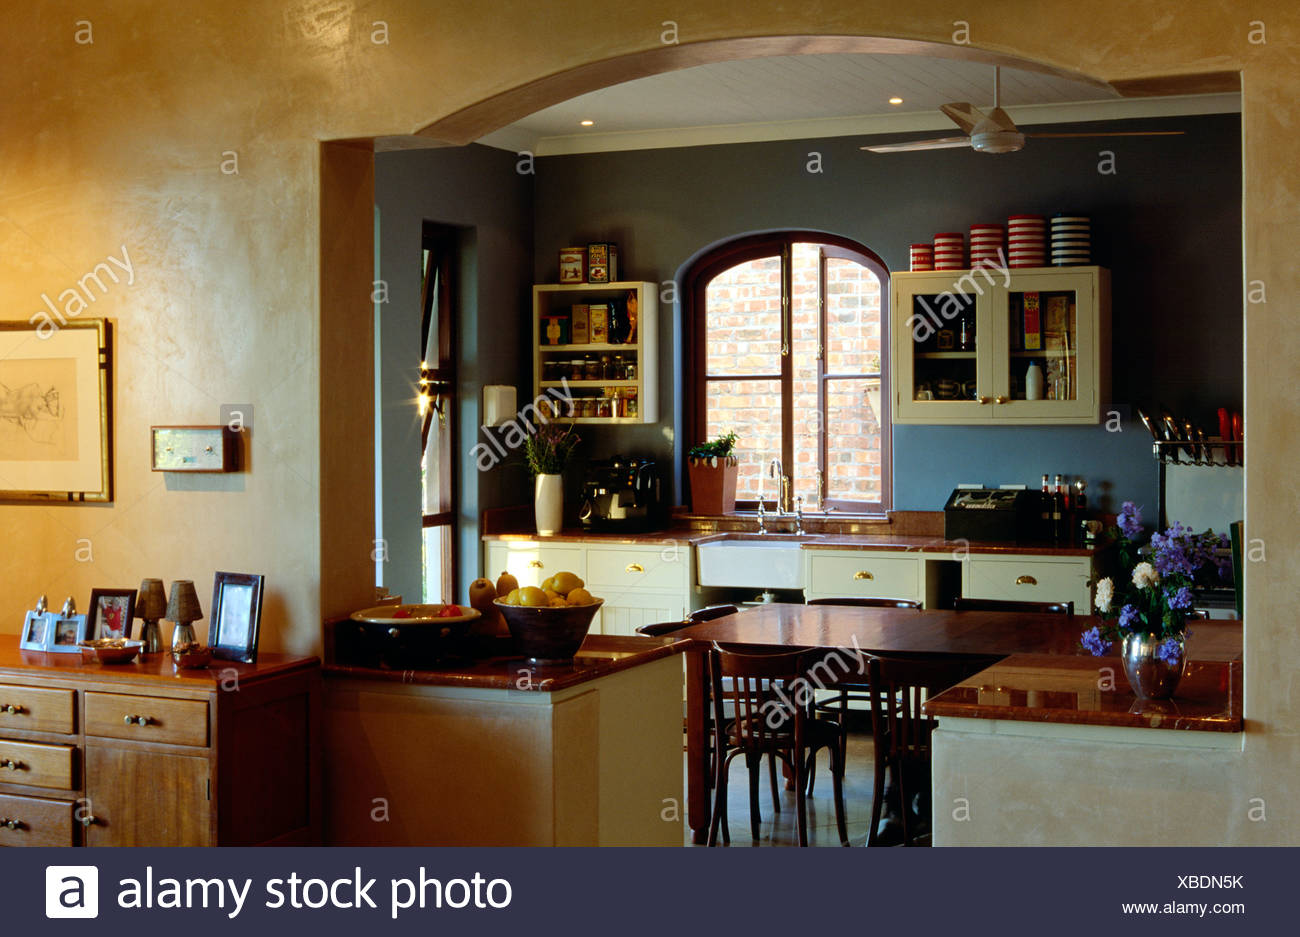 View Through Arch Of Kitchen Dark Blue And Dark Yellow Walls